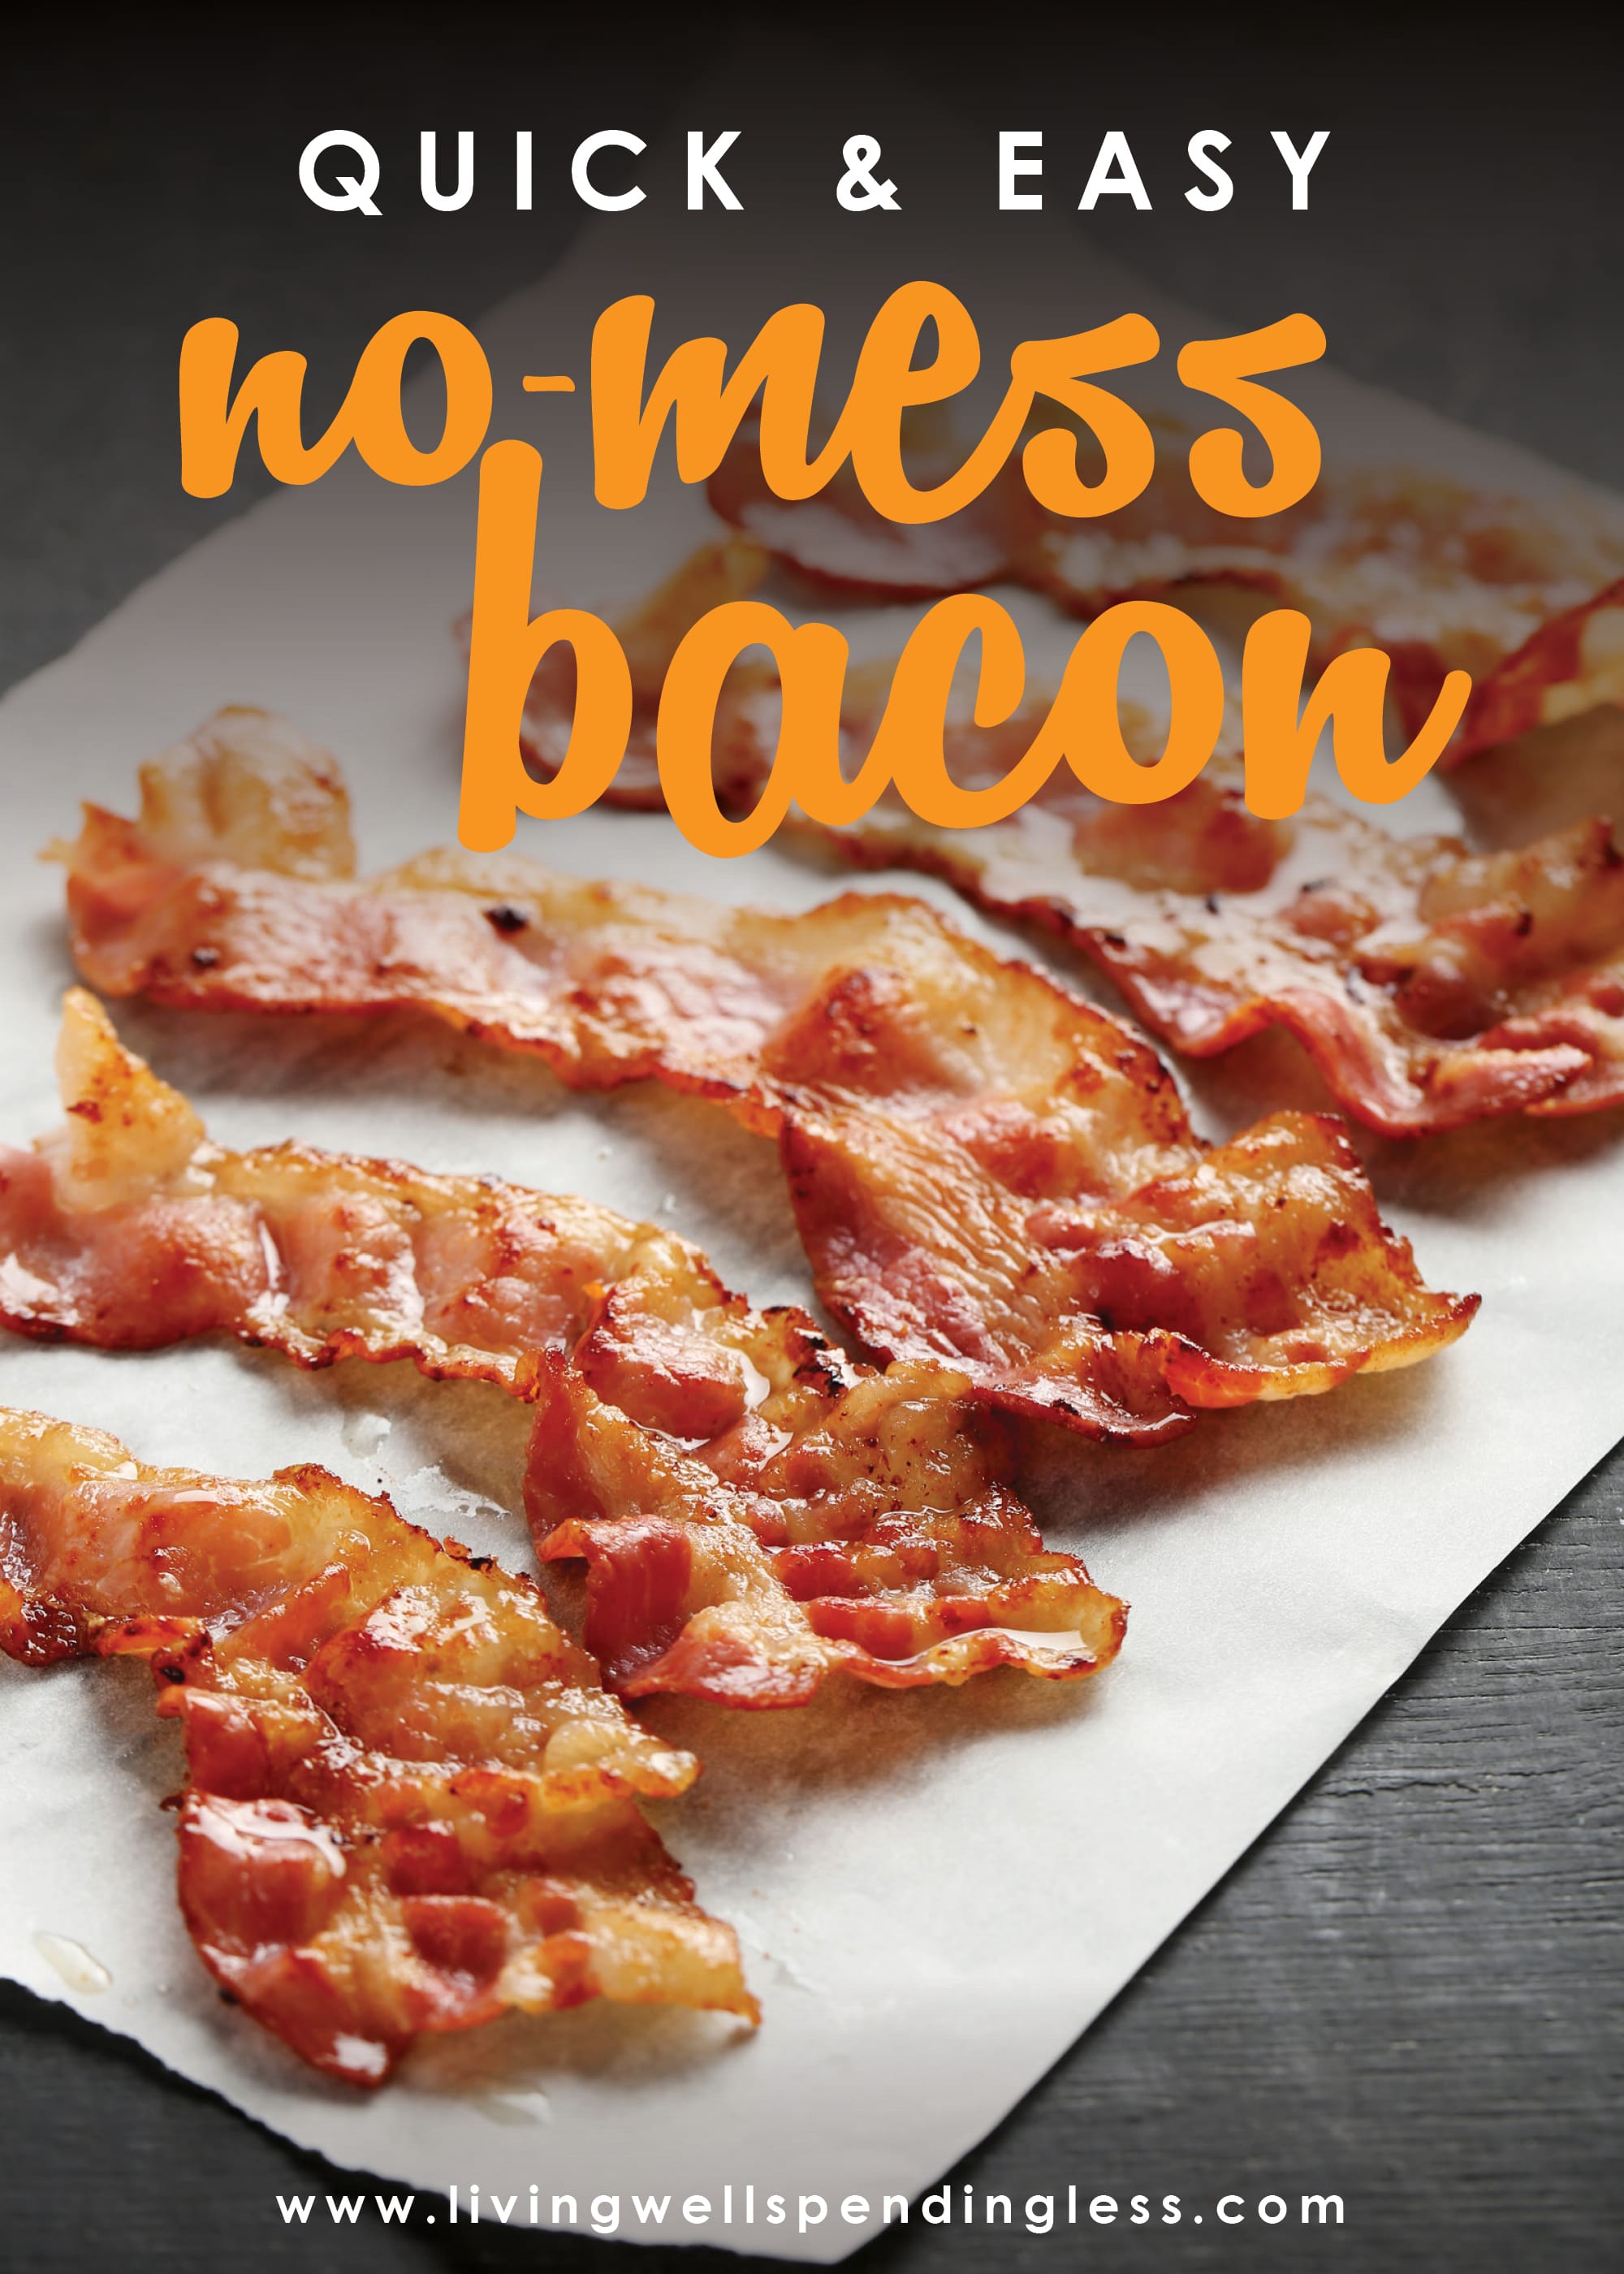 https://www.livingwellspendingless.com/wp-content/uploads/2015/03/No-Fail-Bacon-SHORT-VERTICAL.jpg